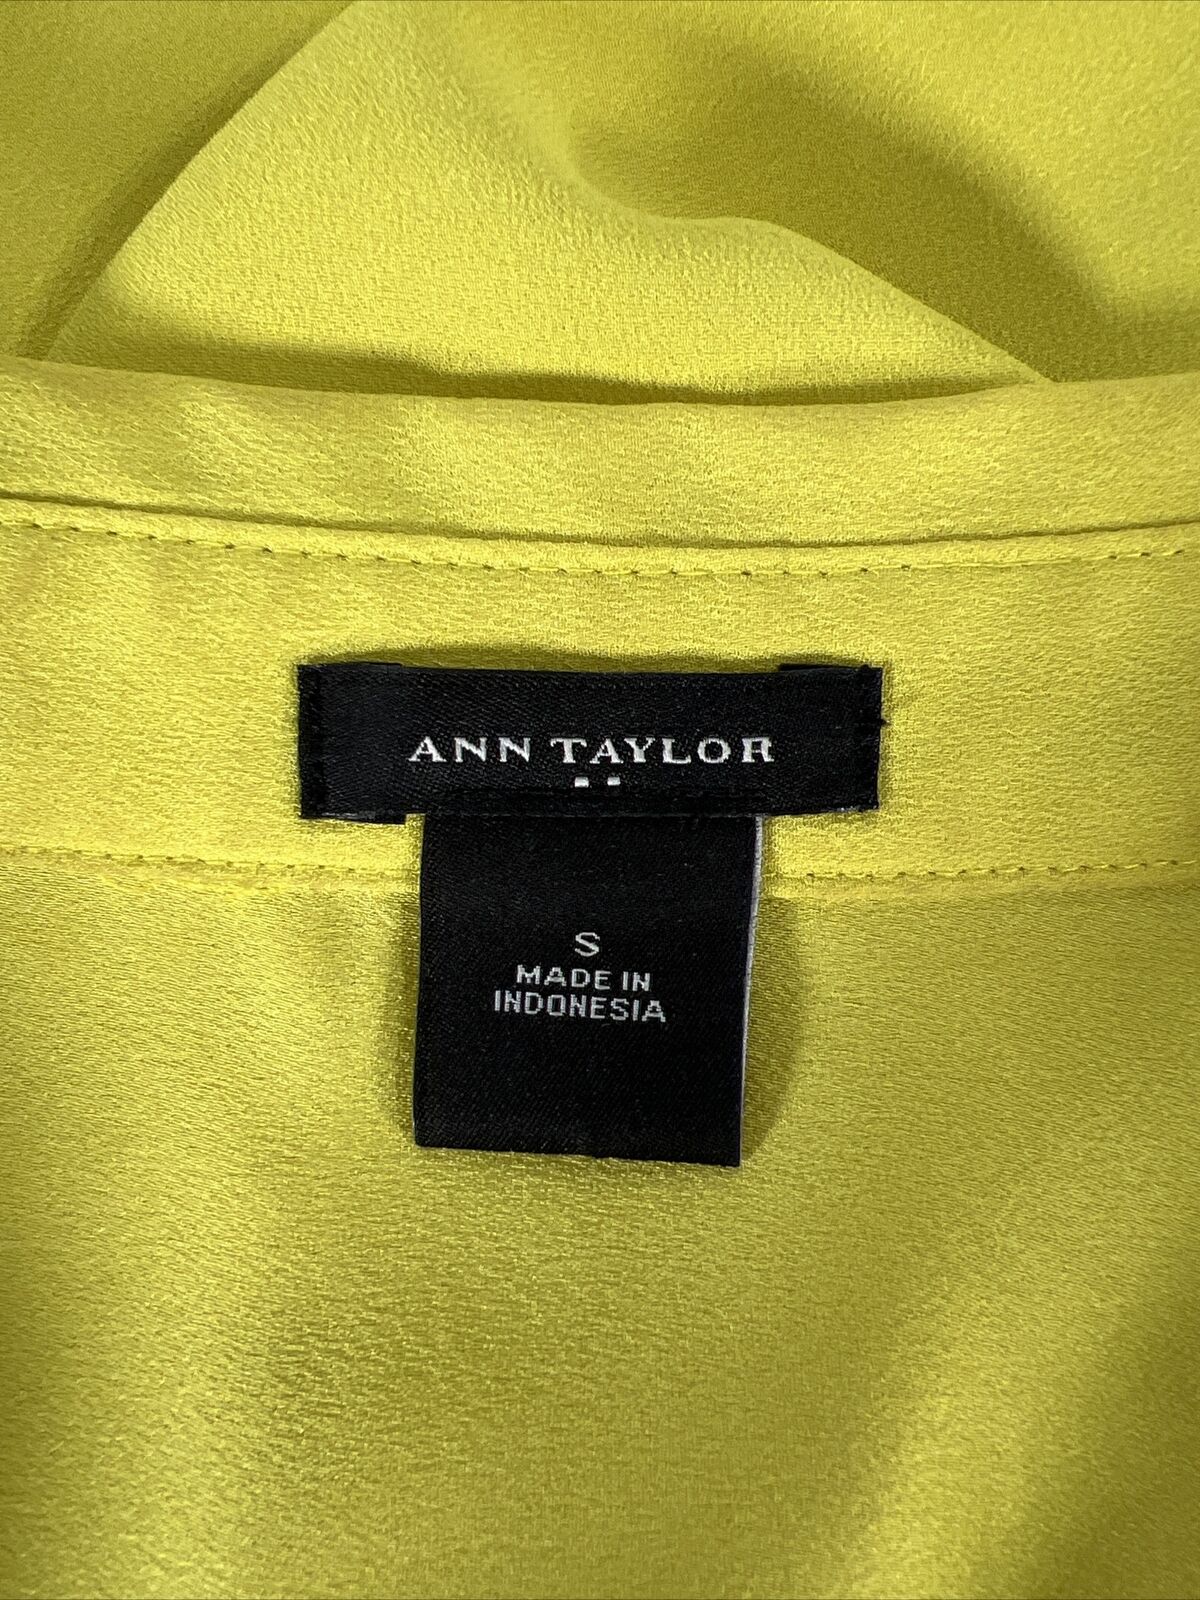 Ann Taylor Women's Green Sleeveless 1/2 Button Blouse Top - S